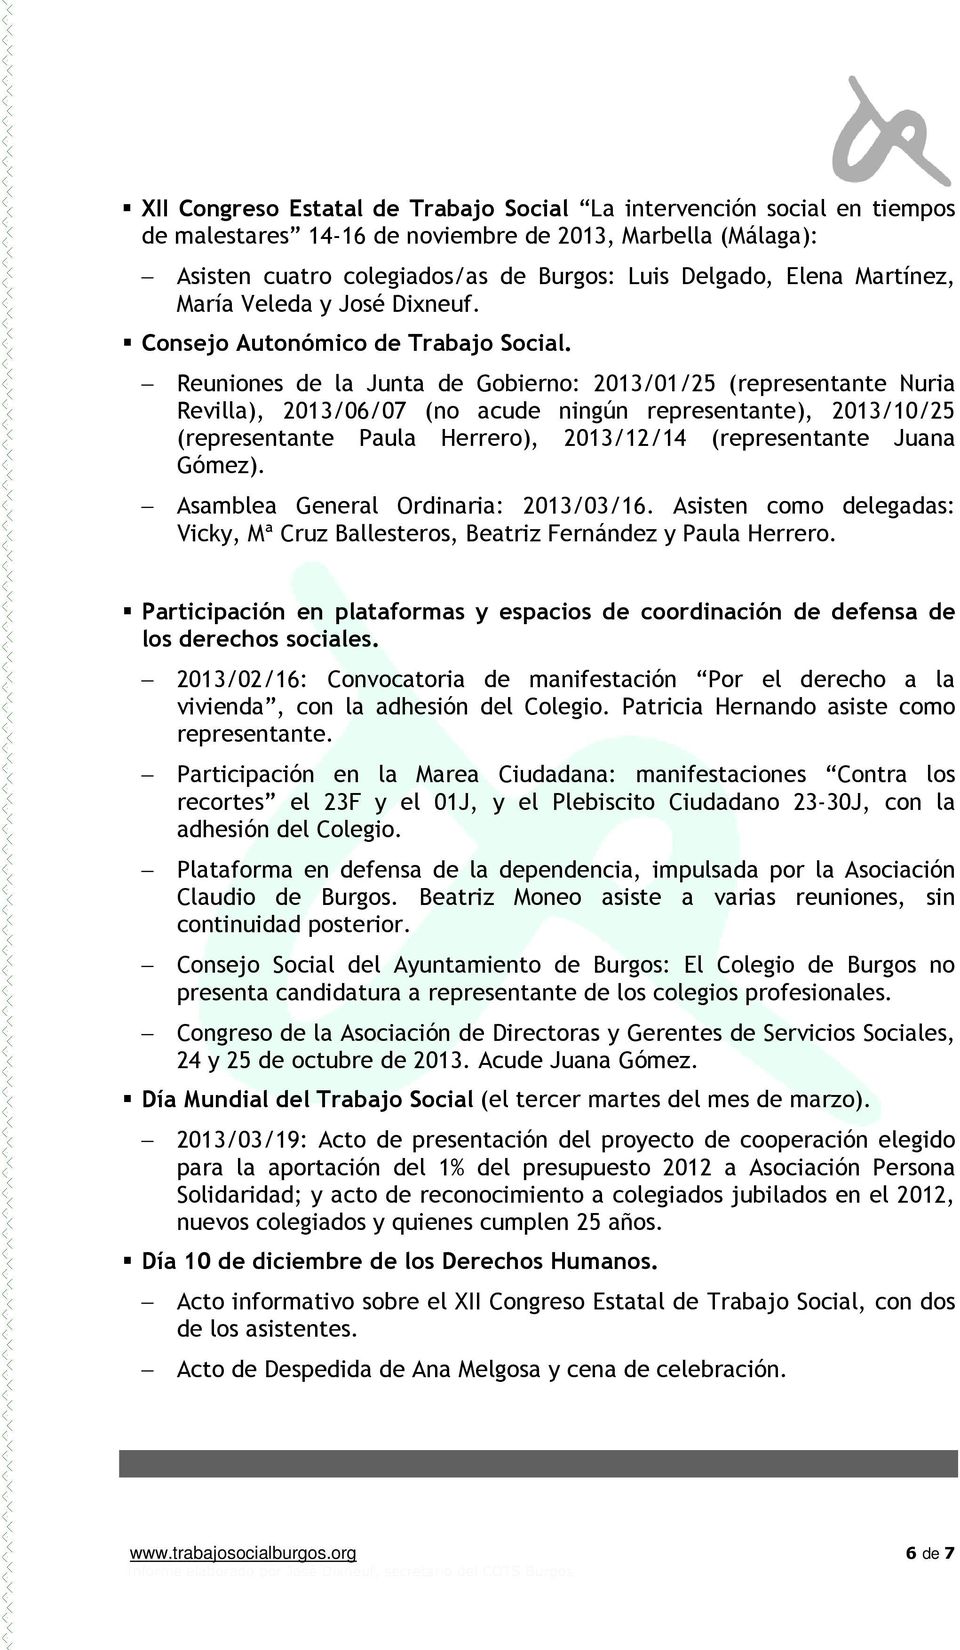 Reuniones de la Junta de Gobierno: 2013/01/25 (representante Nuria Revilla), 2013/06/07 (no acude ningún representante), 2013/10/25 (representante Paula Herrero), 2013/12/14 (representante Juana